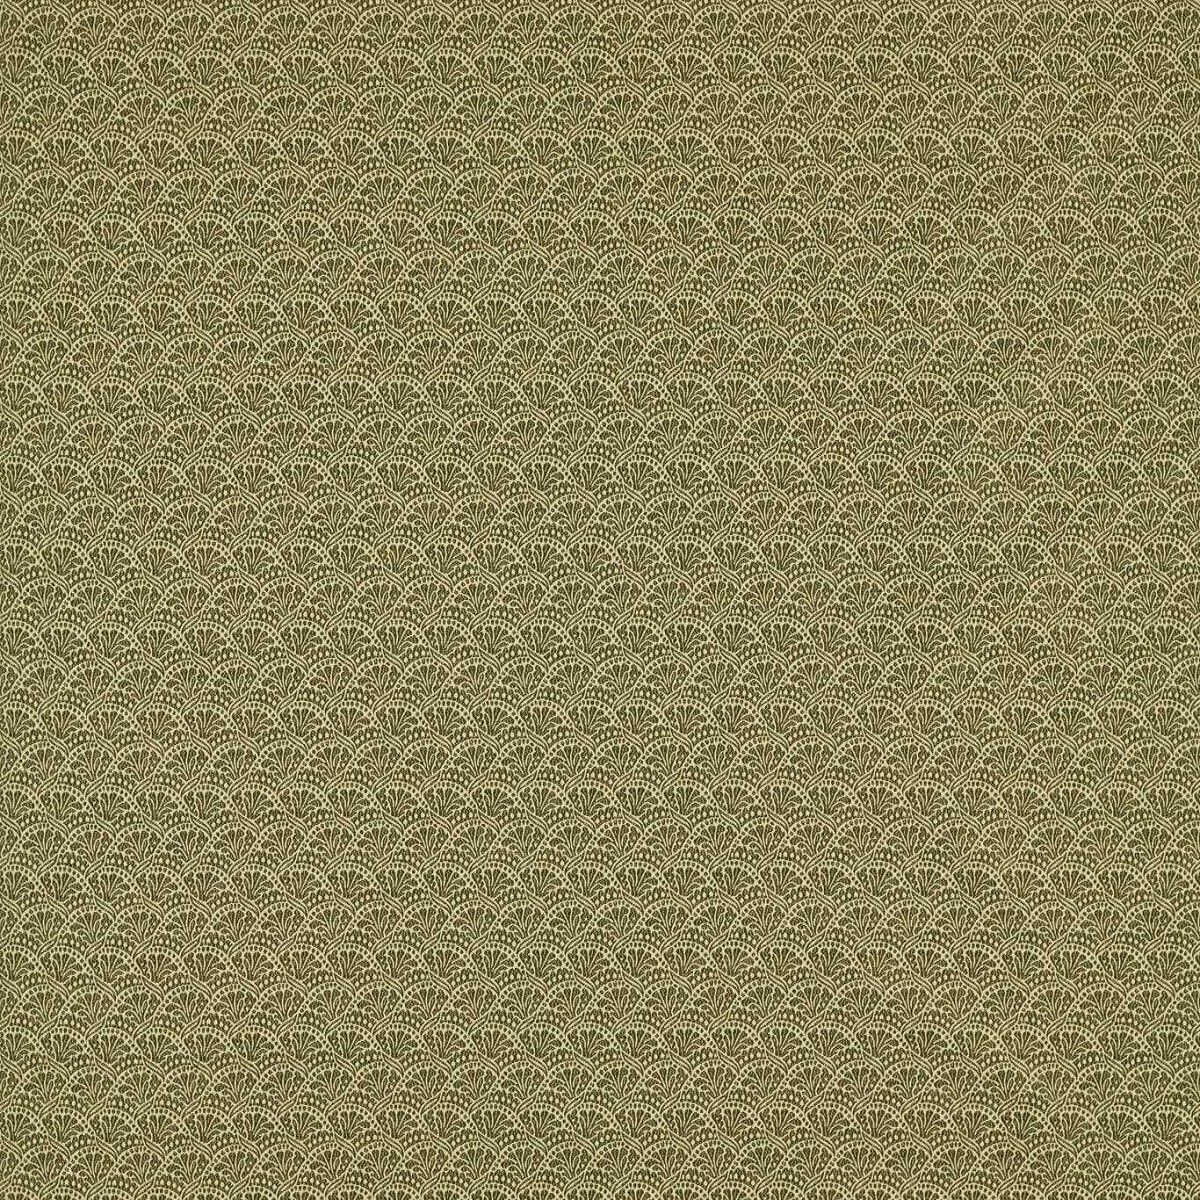 Tudor Damask Olivine Fabric by Zoffany